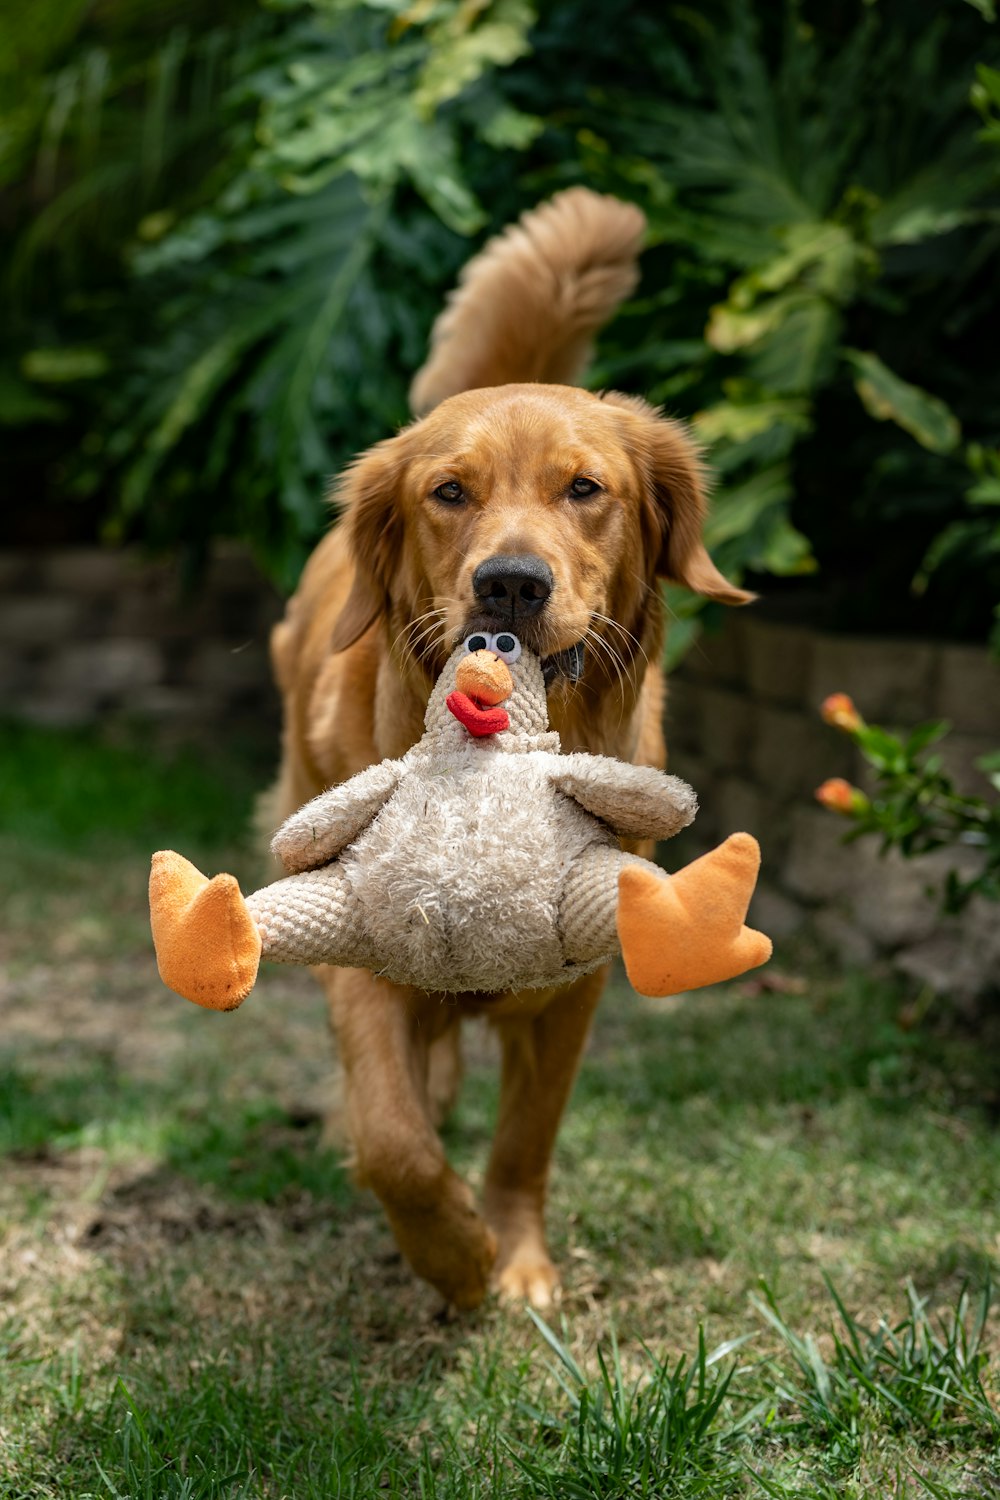 filhote de cachorro golden retriever mordendo o brinquedo de pelúcia laranja e branco no campo de grama verde durante o dia